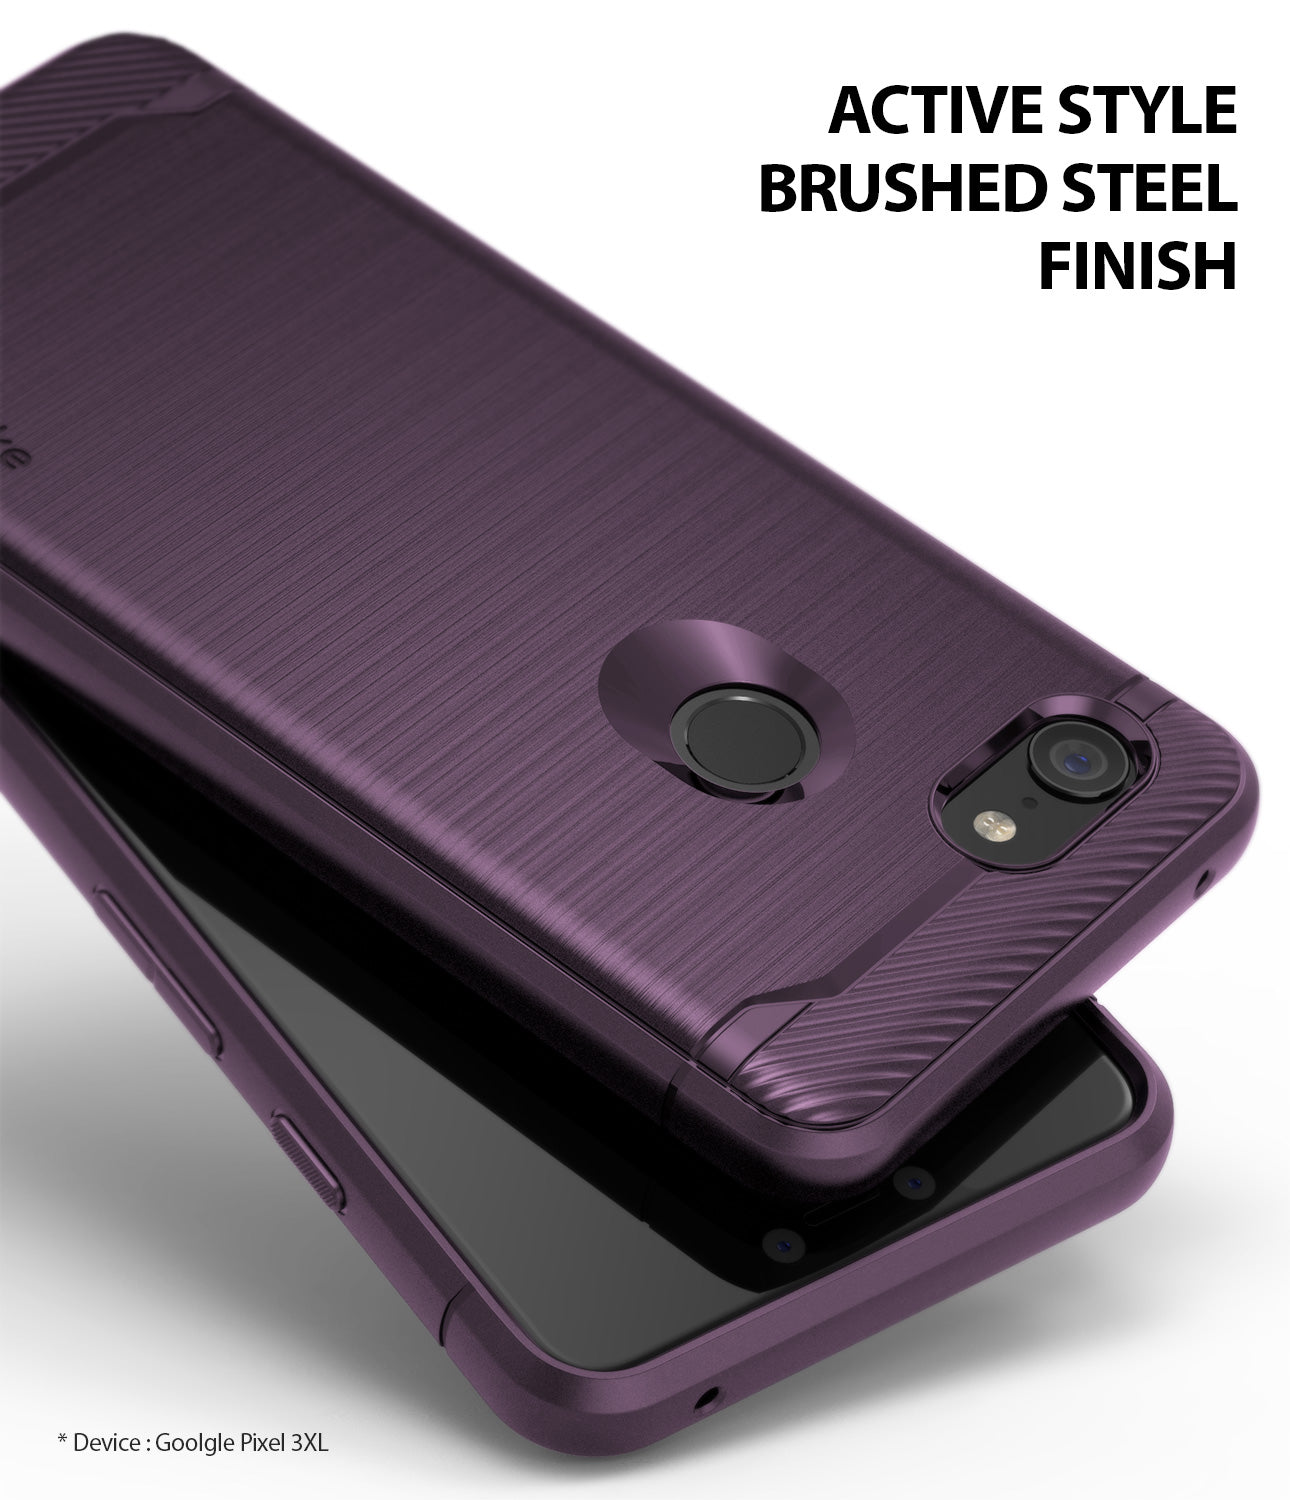 Google Pixel 3 XL Case | Onyx - Active Style Brushed Steel Finish